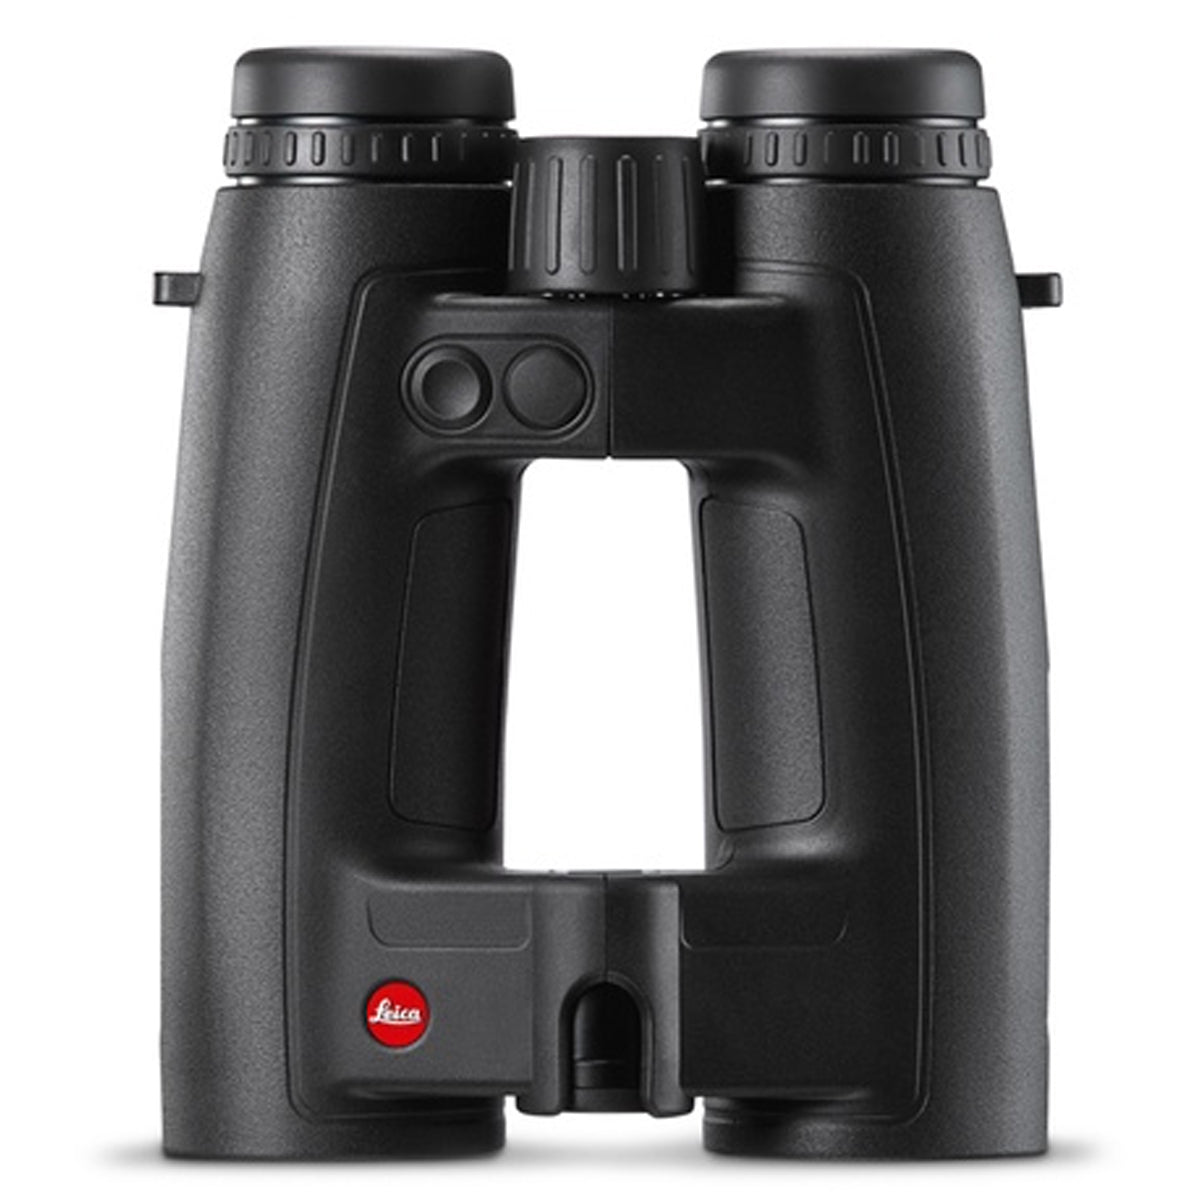 Leica Geovid 10x42 HD-R 2700 Rangefinding Binocular by Leica | Optics - goHUNT Shop